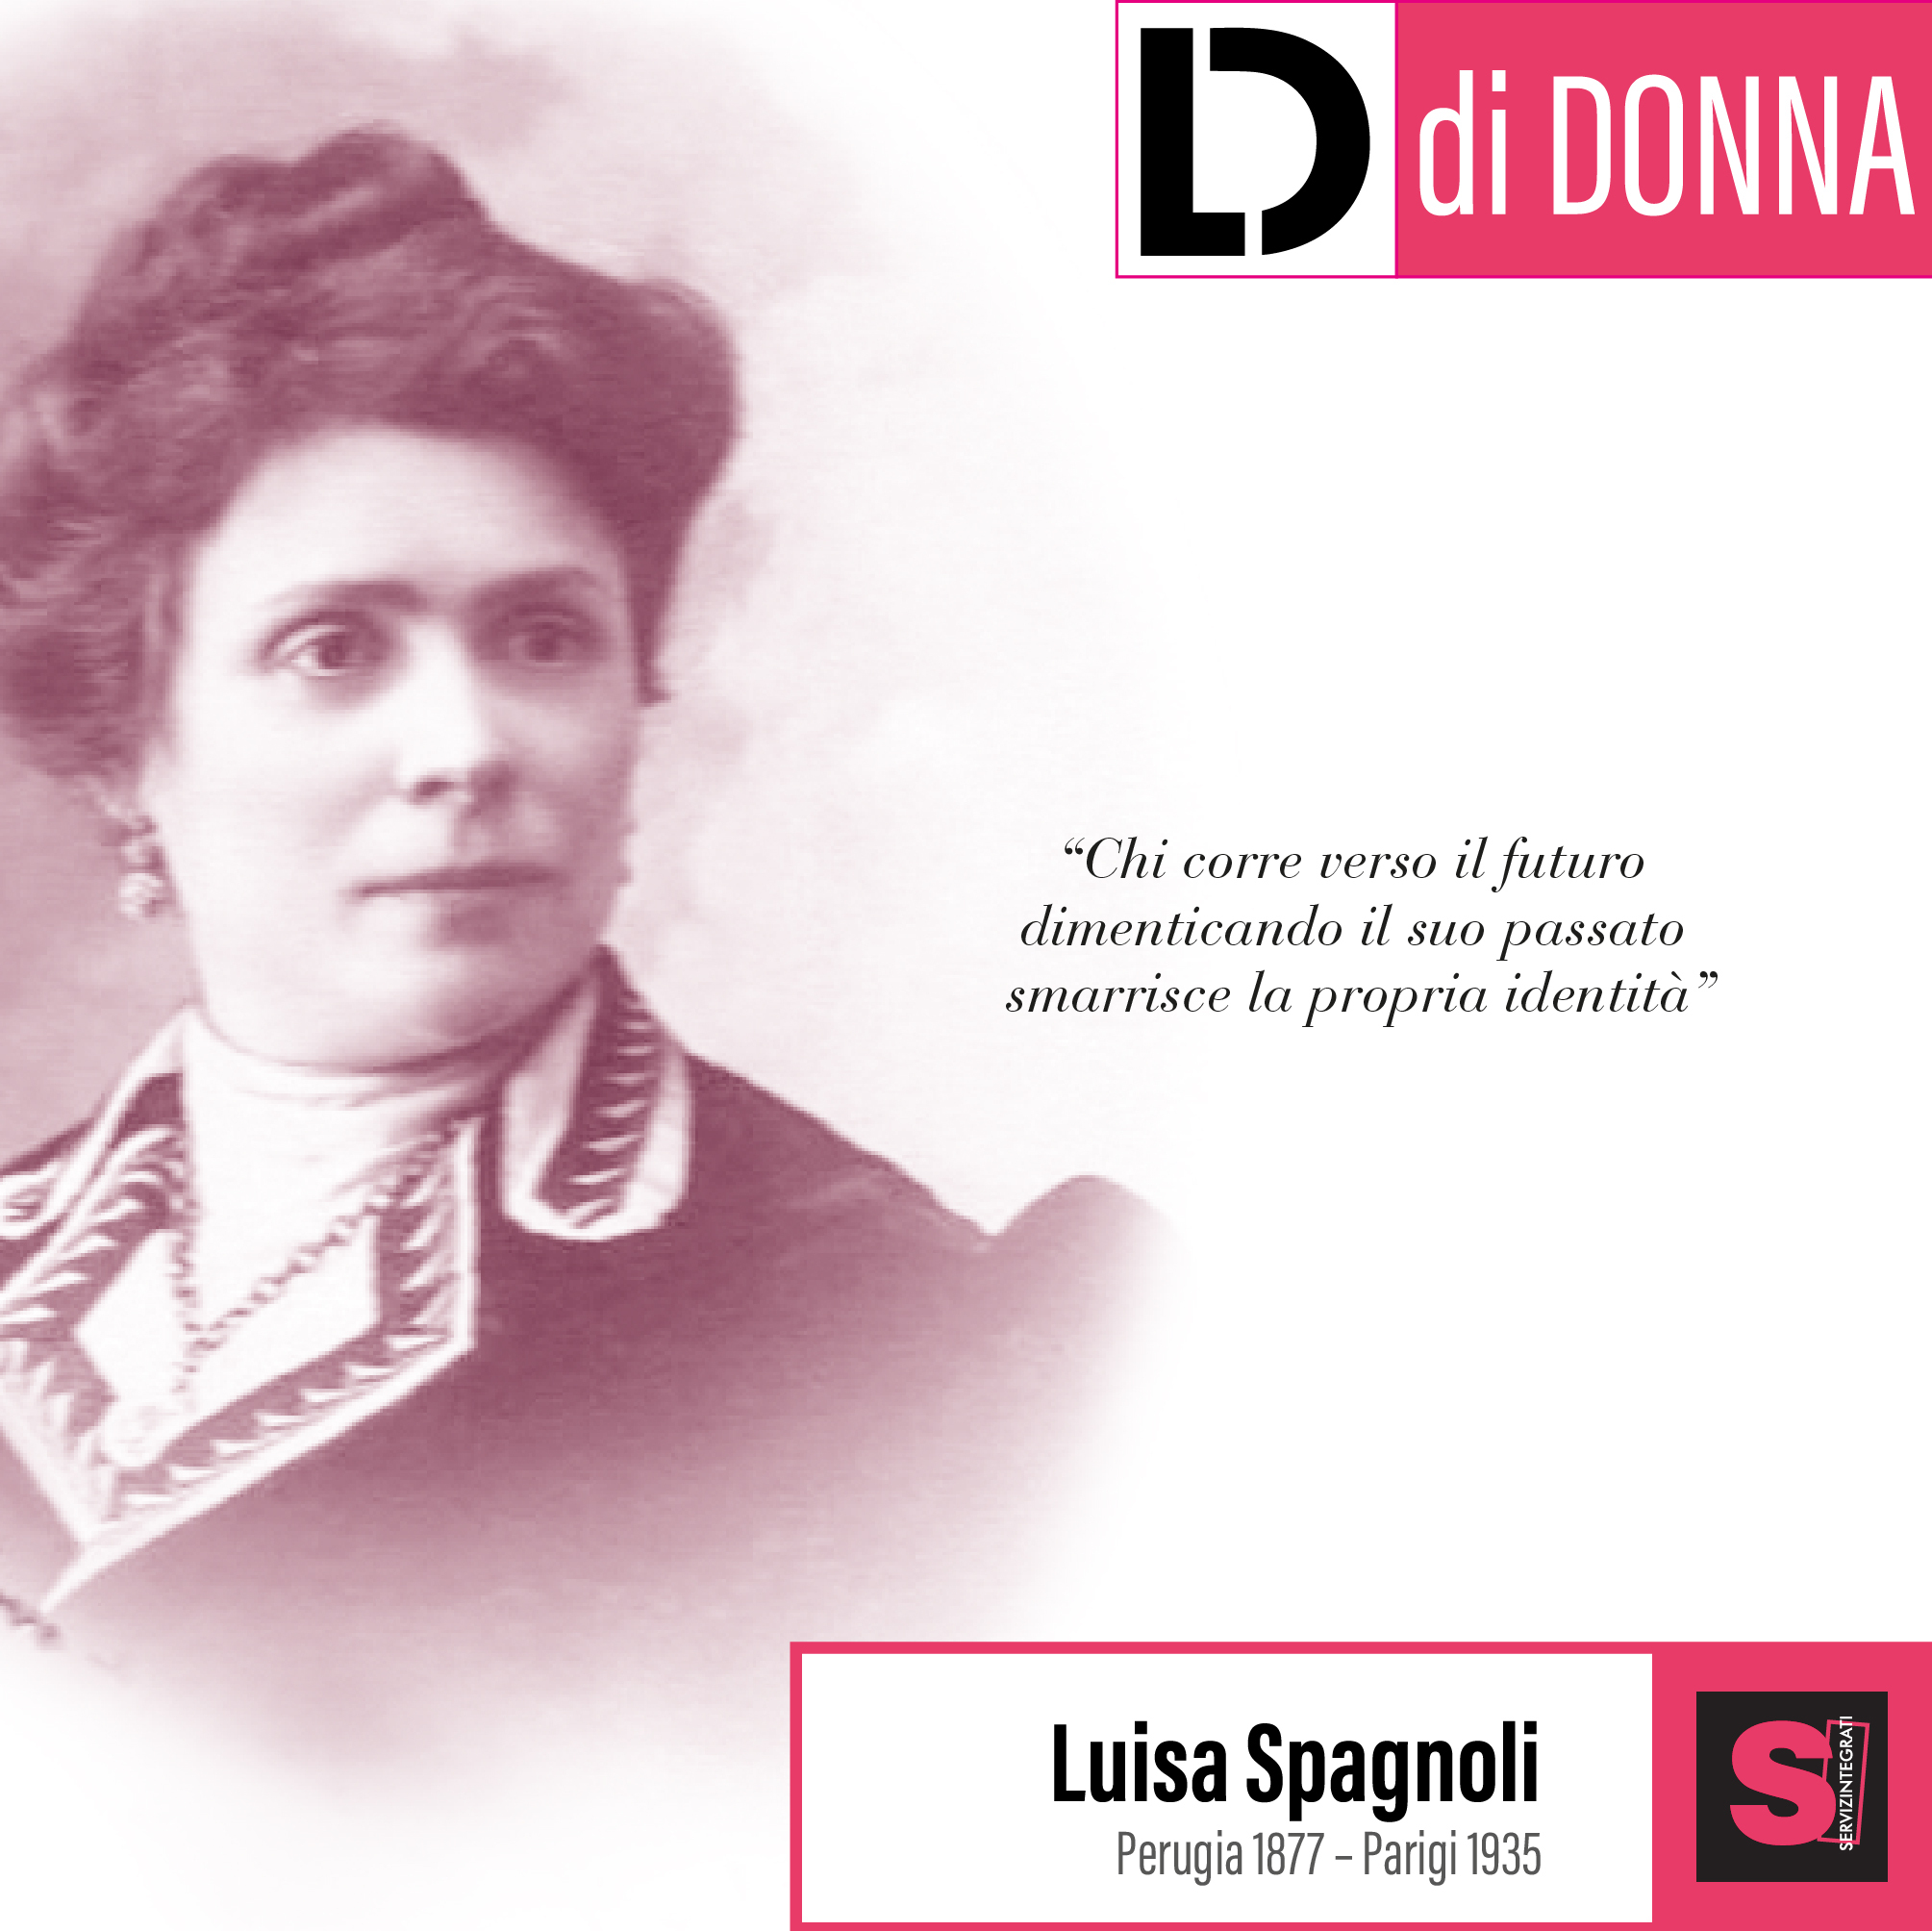 Luisa Spagnoli e le donne nell'industria